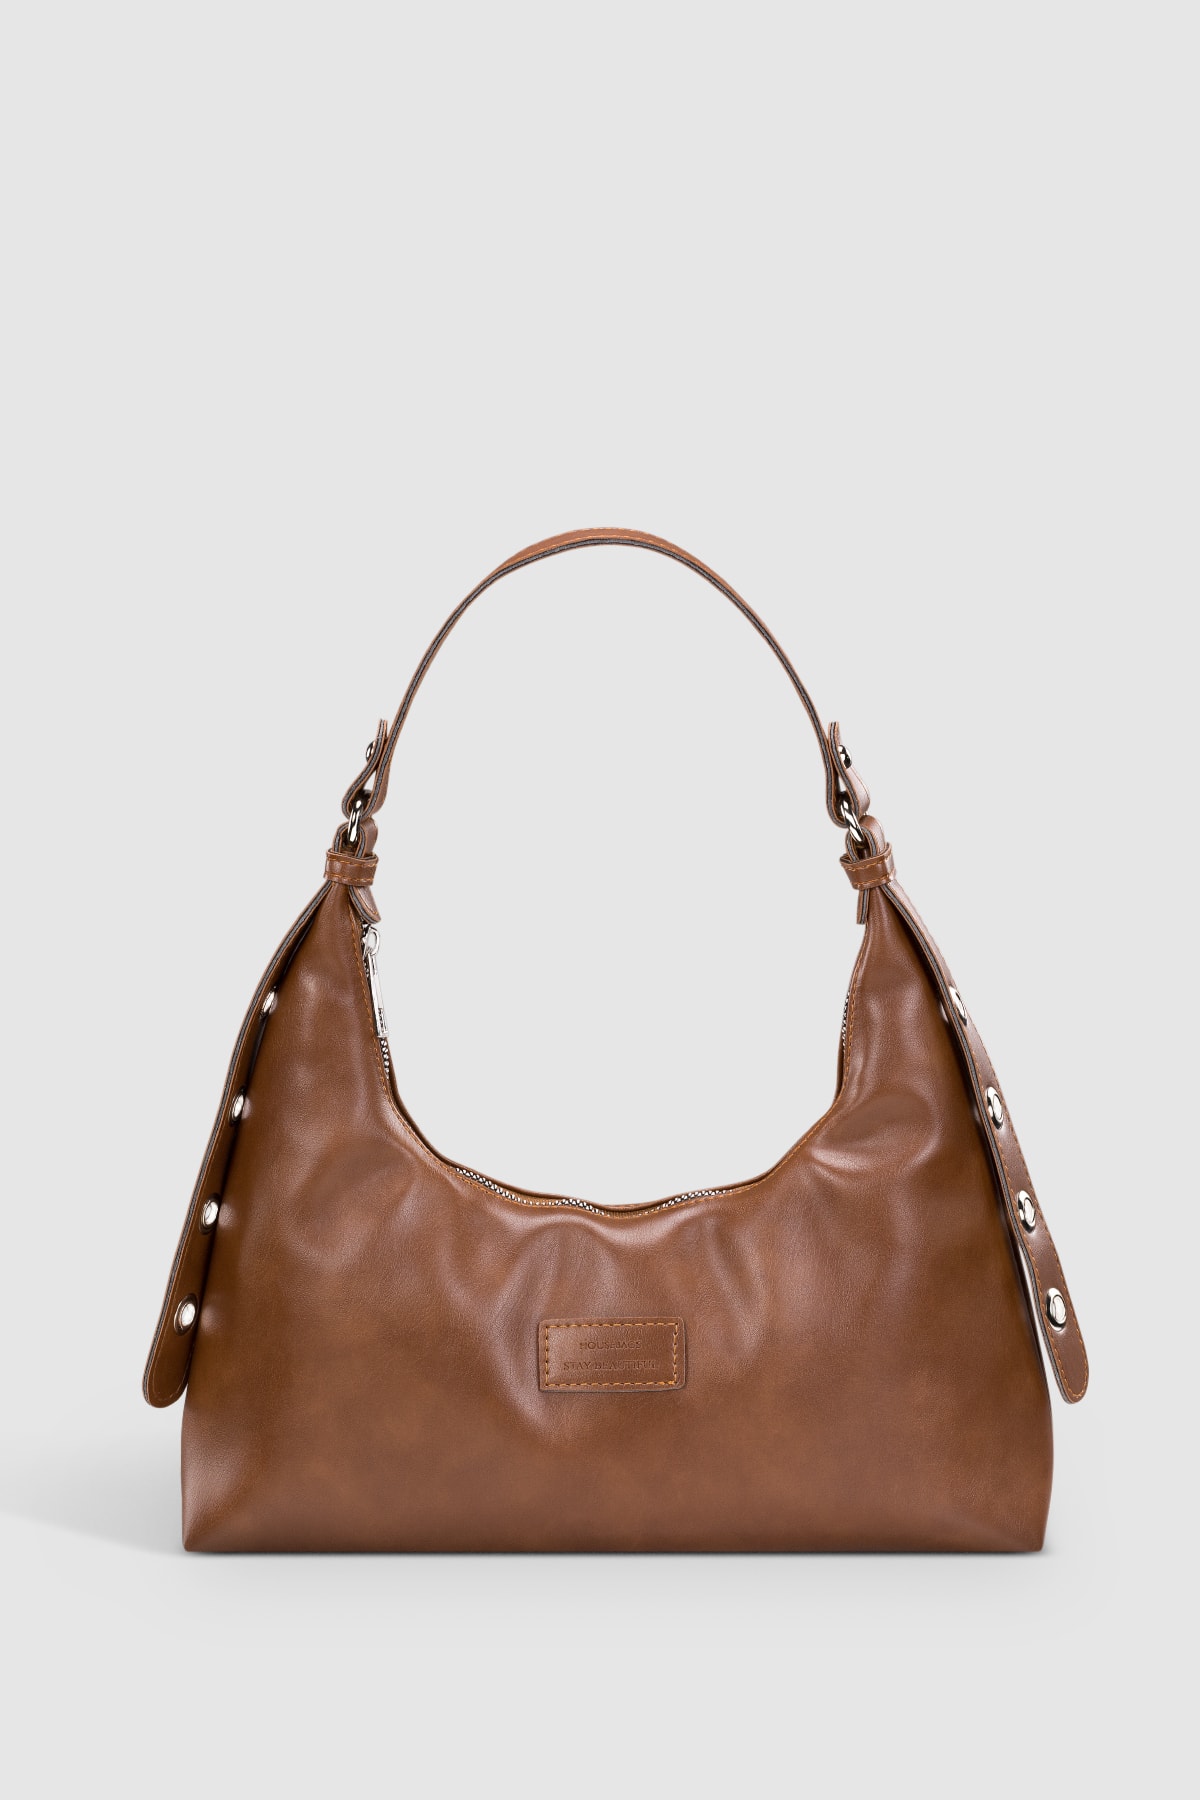 Housebags Kadın Kahverengi Baguette Çanta 205 Fiyatı, Yorumları - TRENDYOL